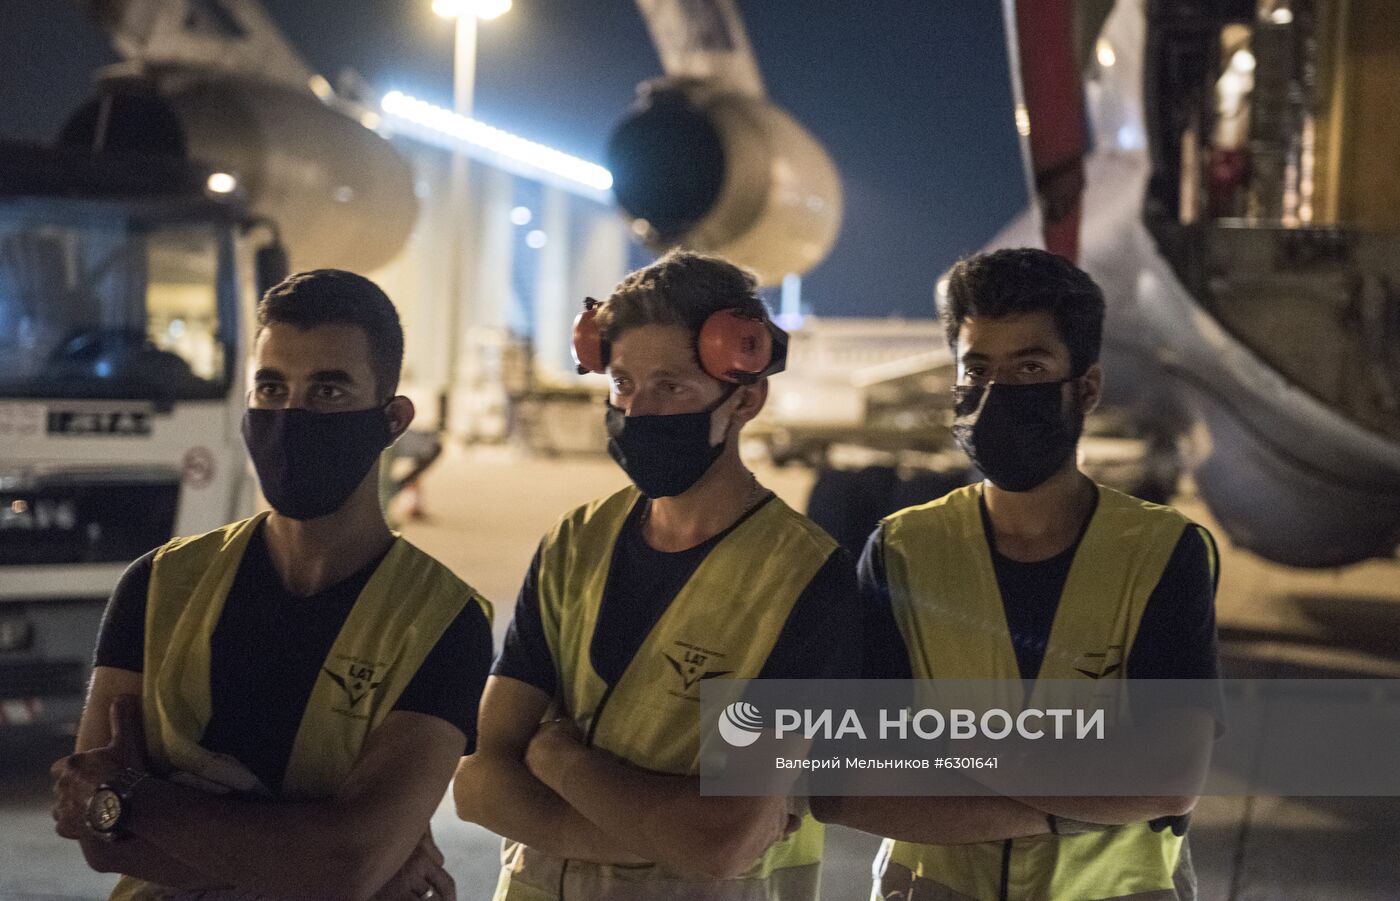 Самолет с российской помощью приземлился в Бейруте